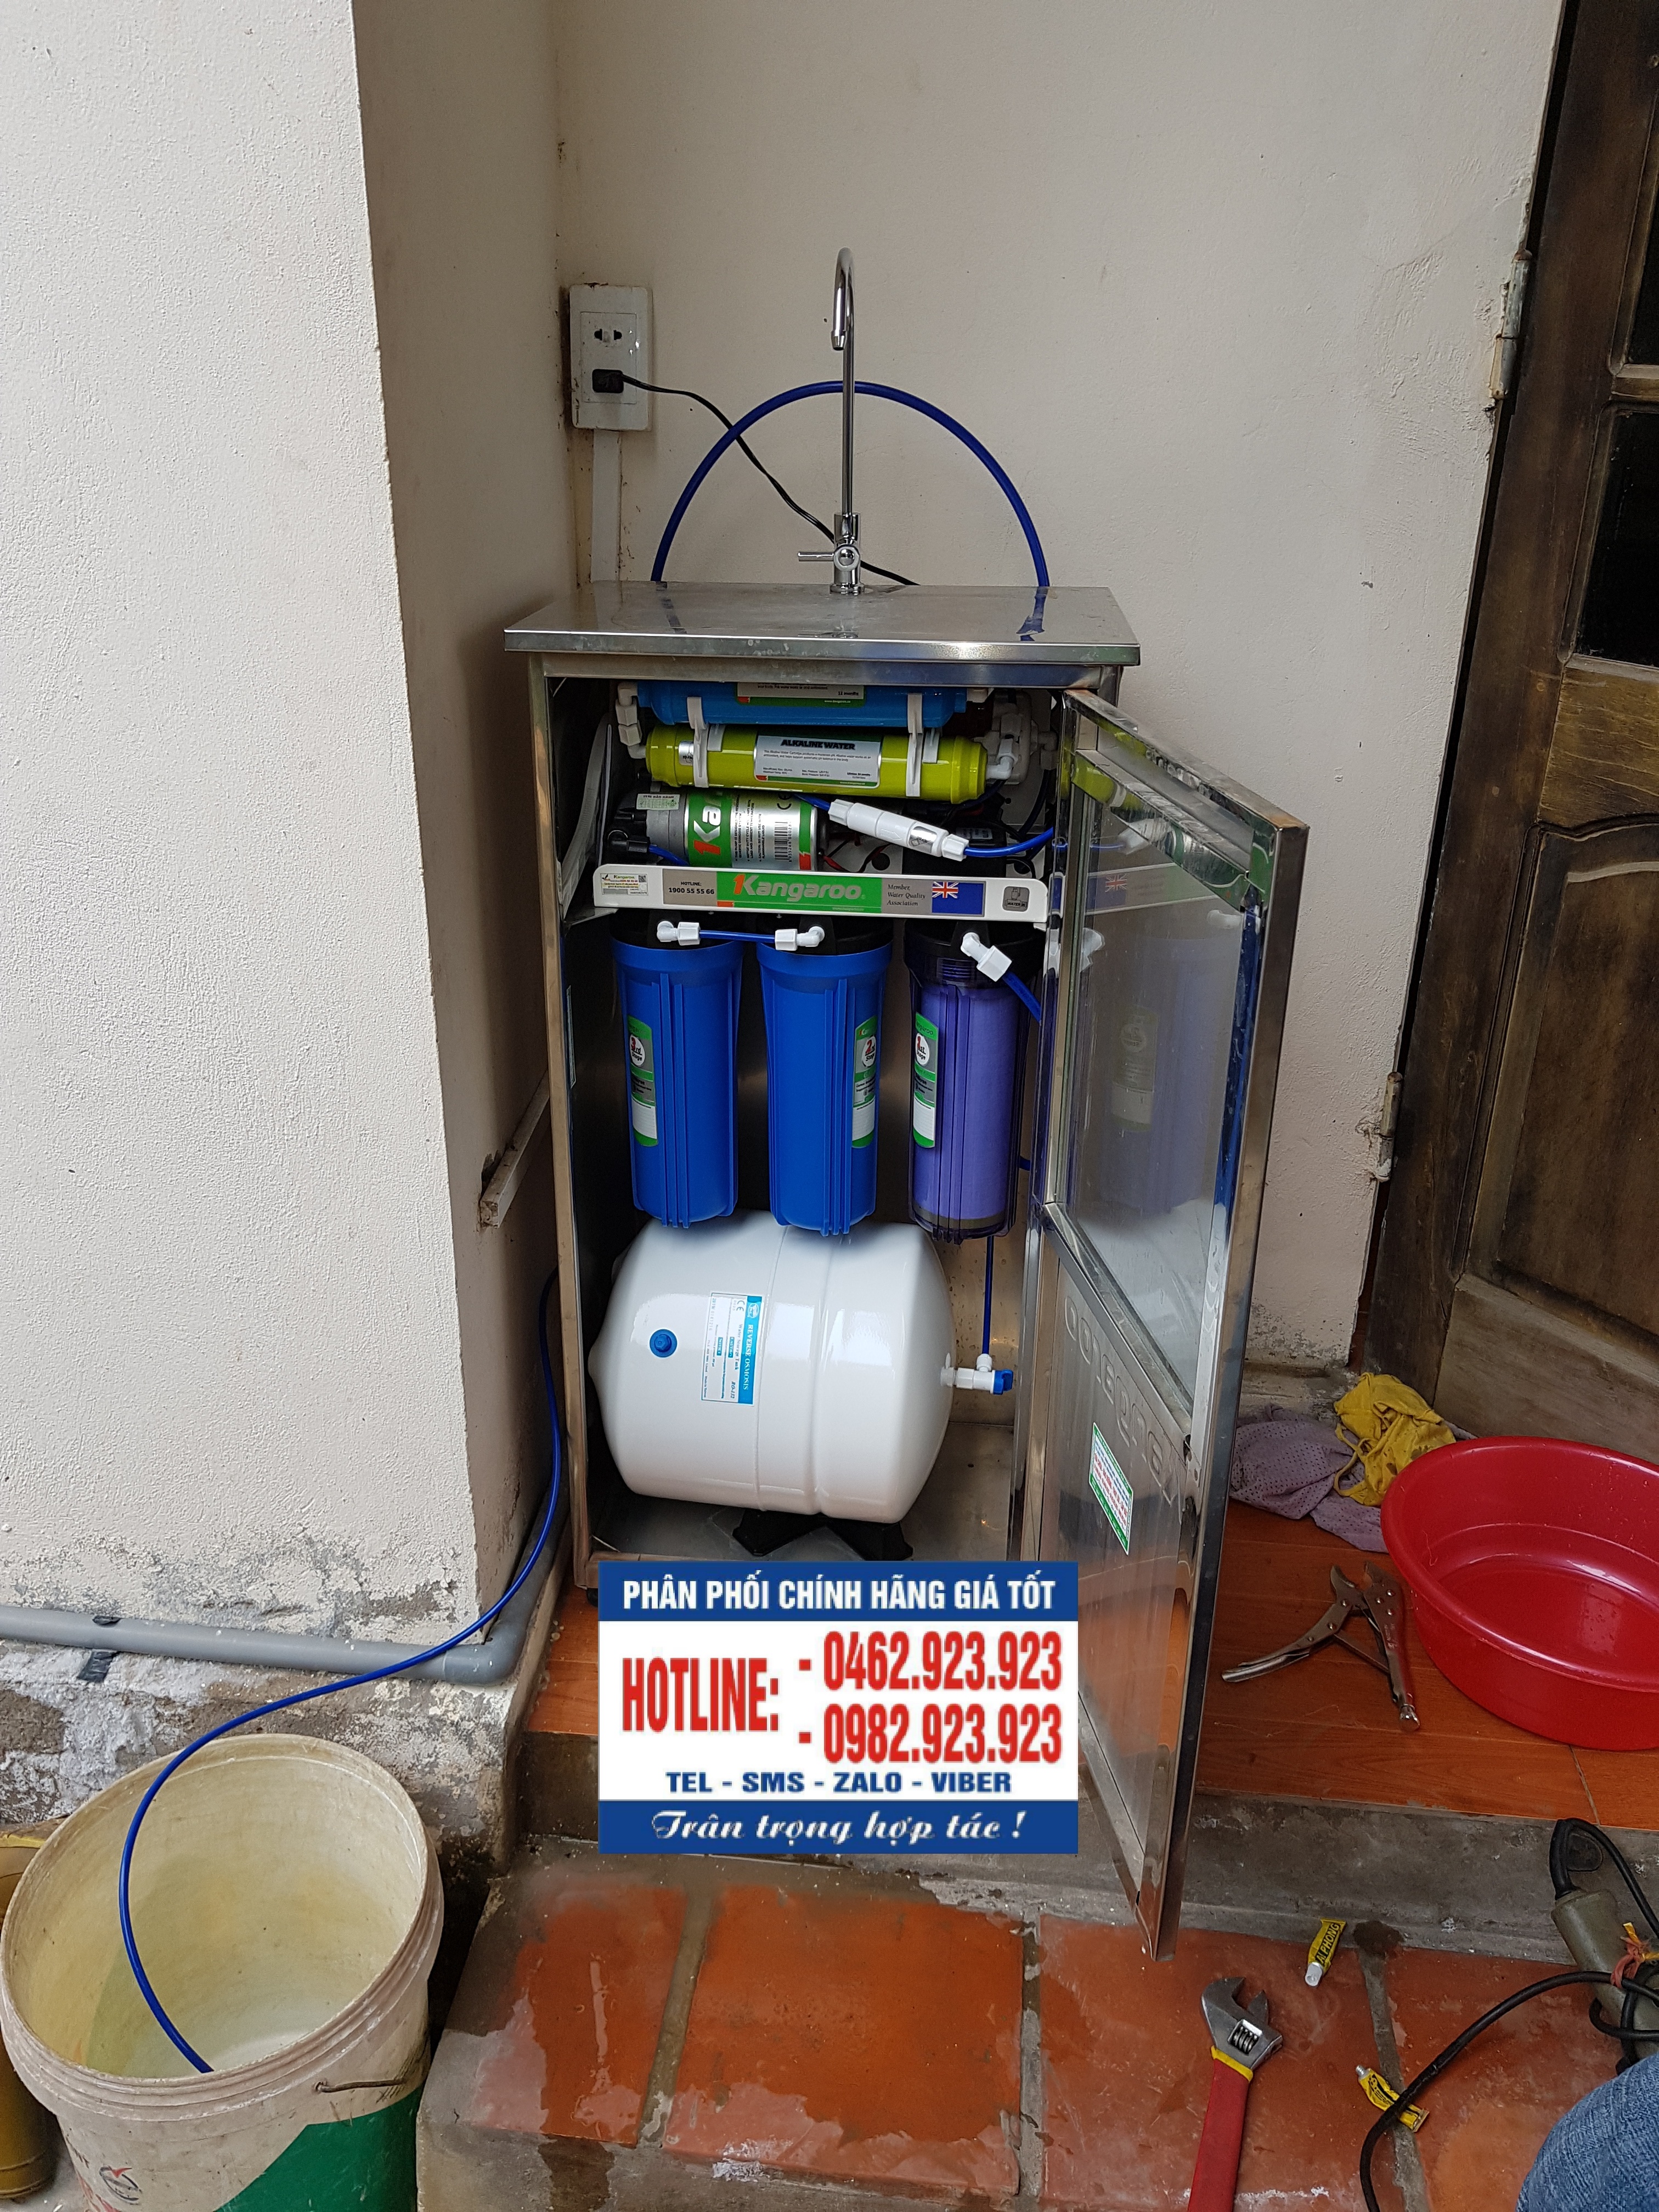 Lắp máy lọc nước Kangaroo tại nhà a Canh tổ 12 phường Đồng Mai Hà Đông Hà Nội